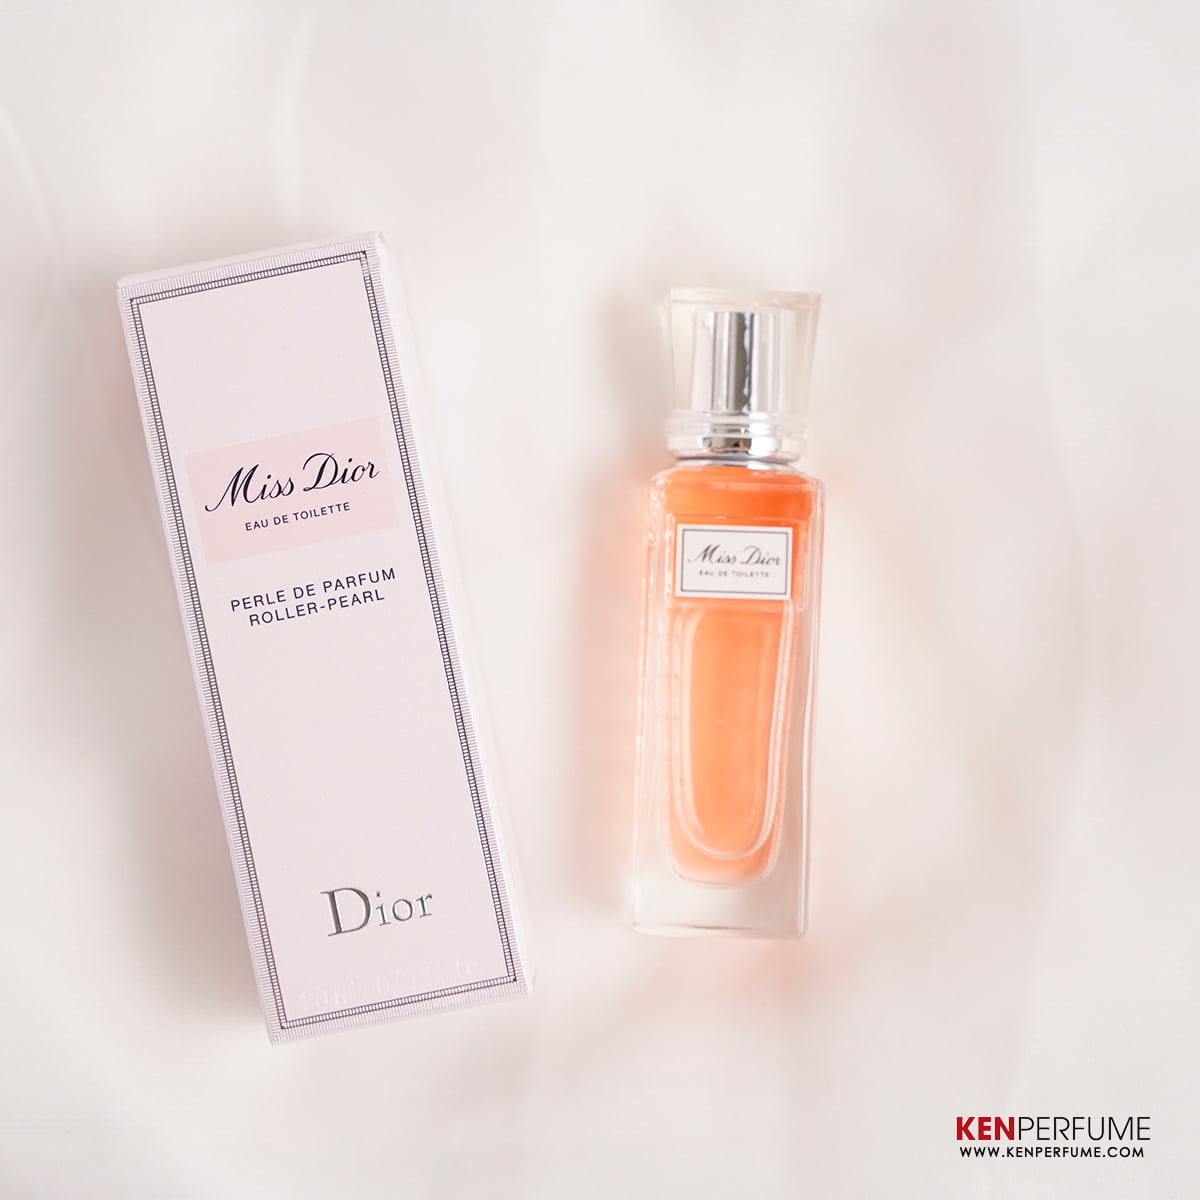 REVIEW Nước hoa Dior Jadore chính hãng từ Pháp